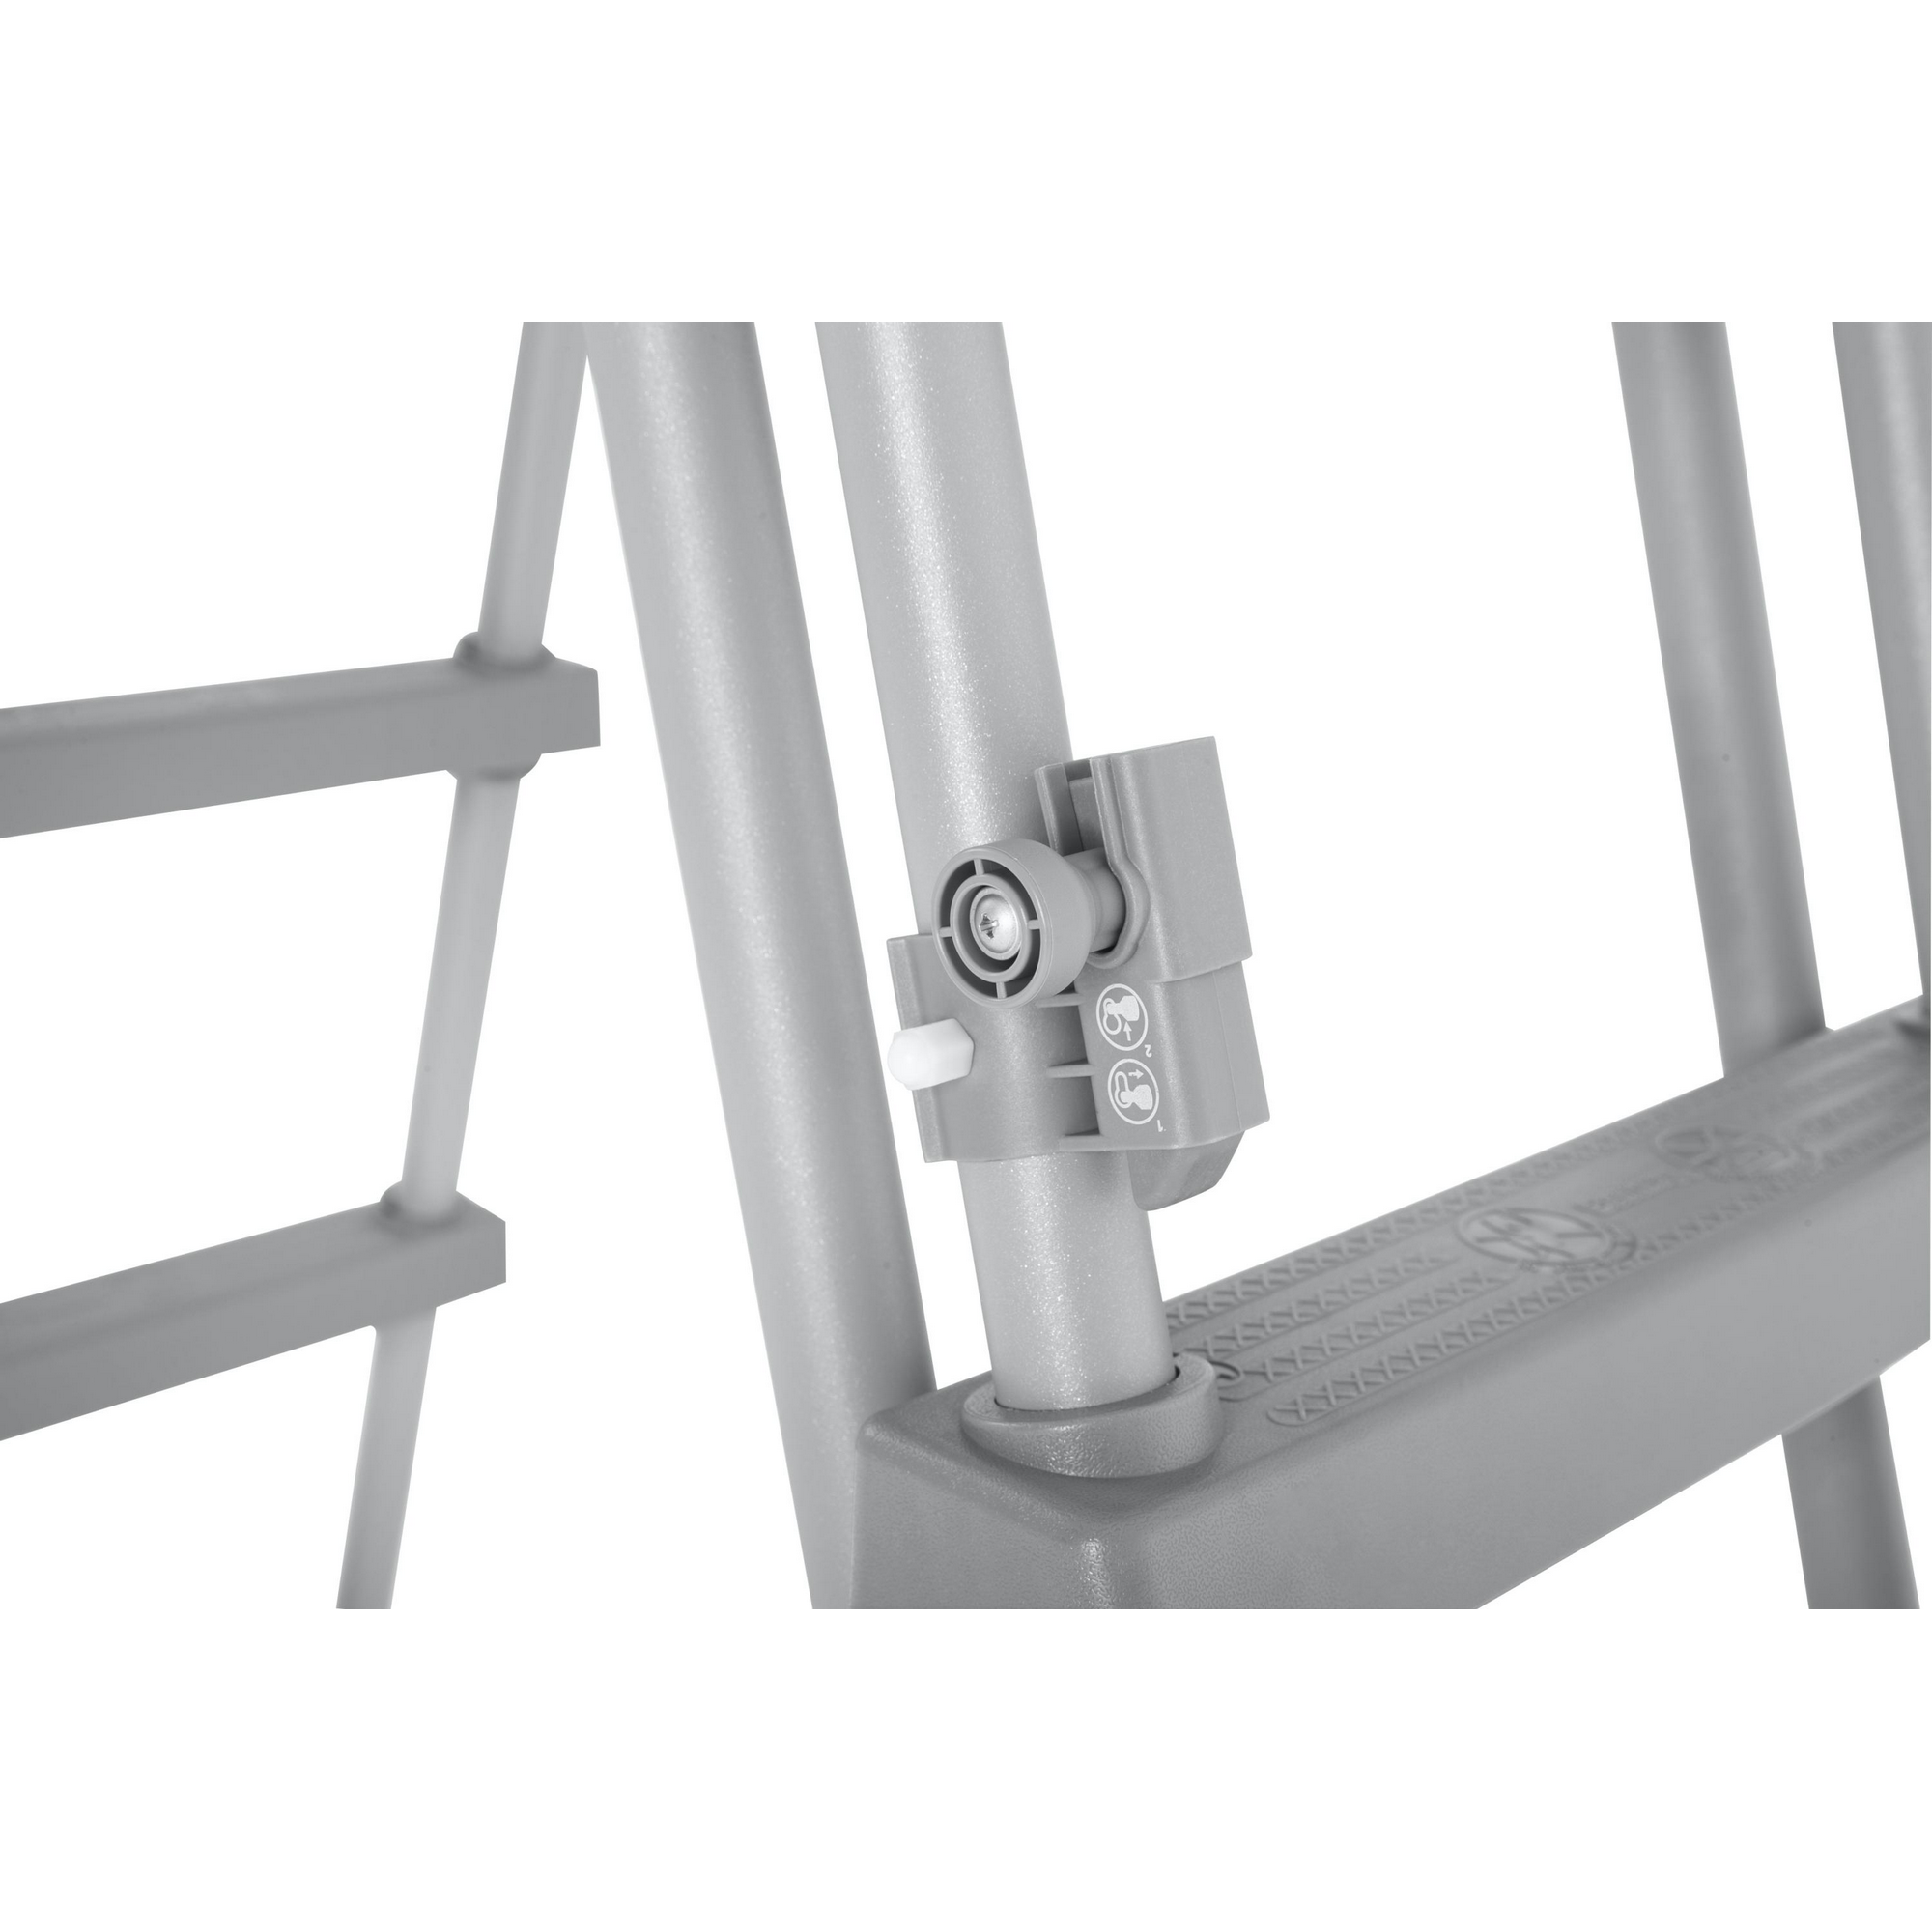 Pool-Sicherheitsleiter 'Flowclear™' Stahl für Pools bis 132 cm + product picture